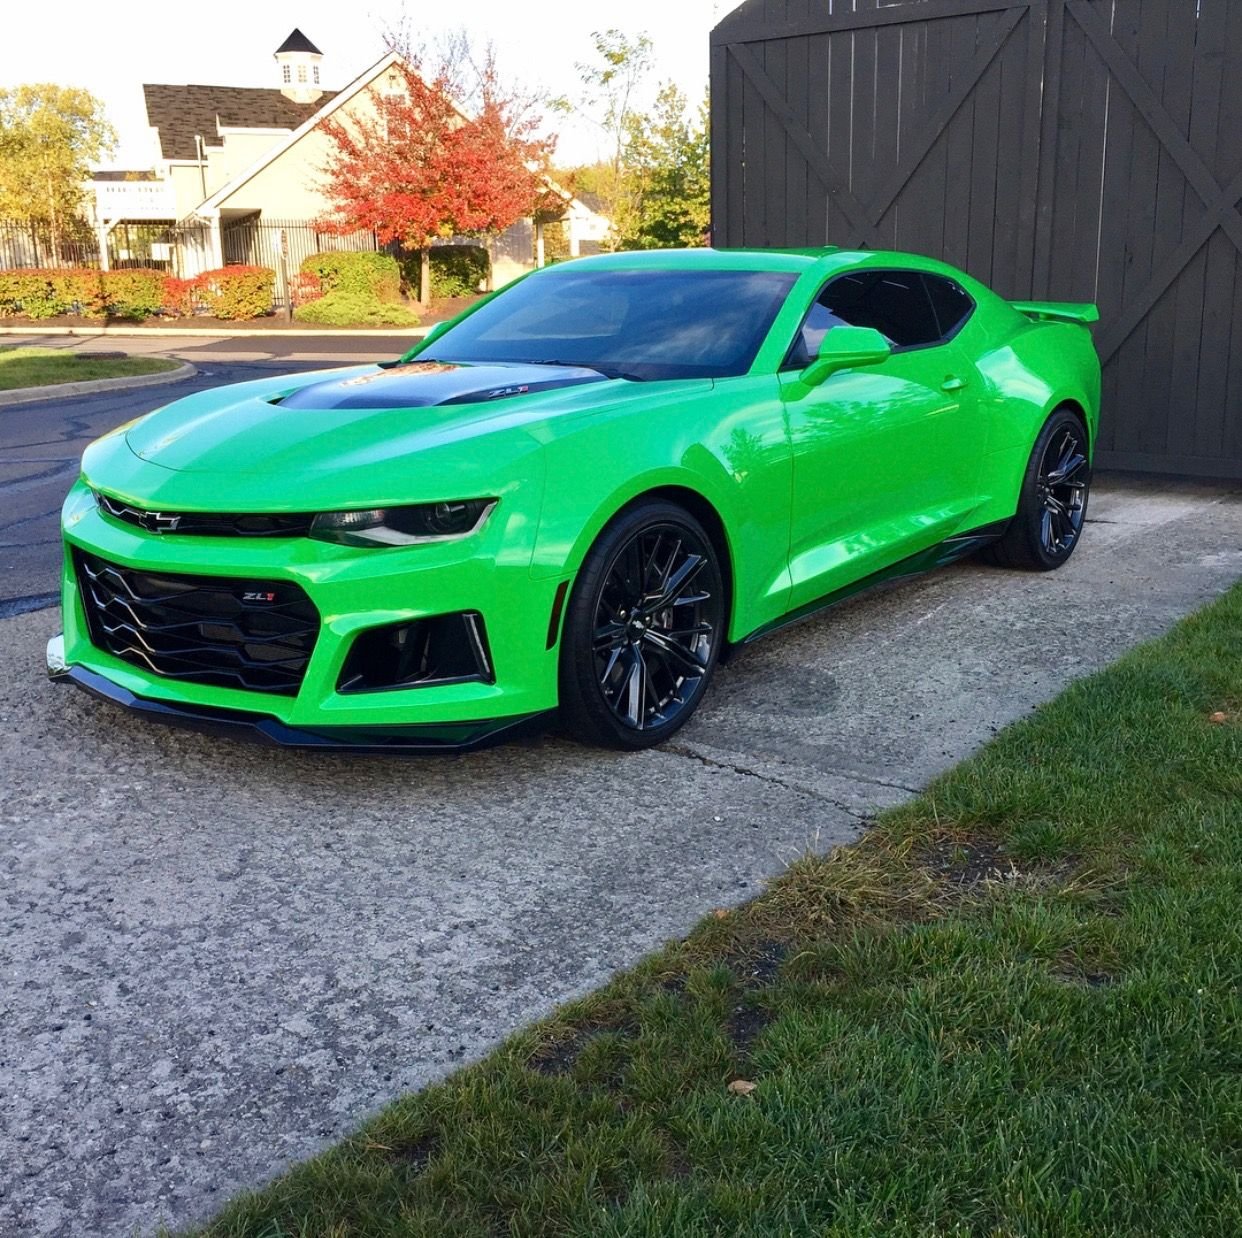 Ярко зеленый цвет машины